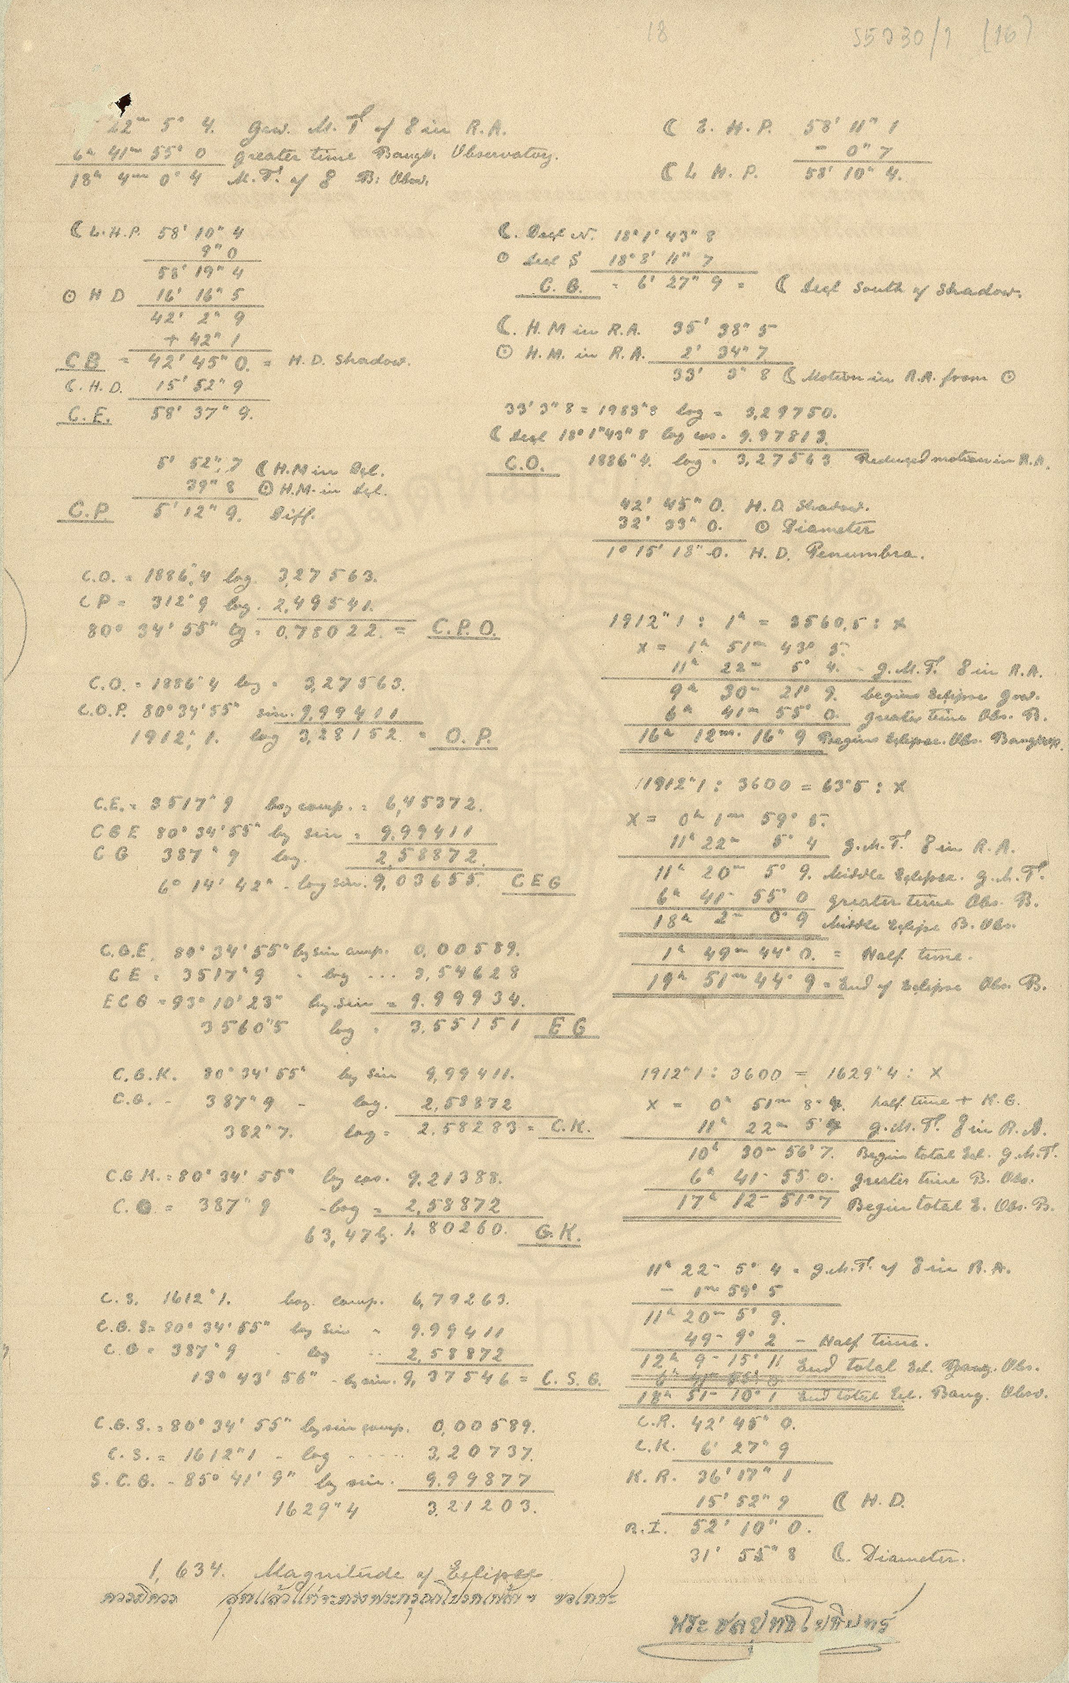 70 ปี 70 เรื่องเล่าจากจดหมายเหตุ : การคำนวณจันทรุปราคา